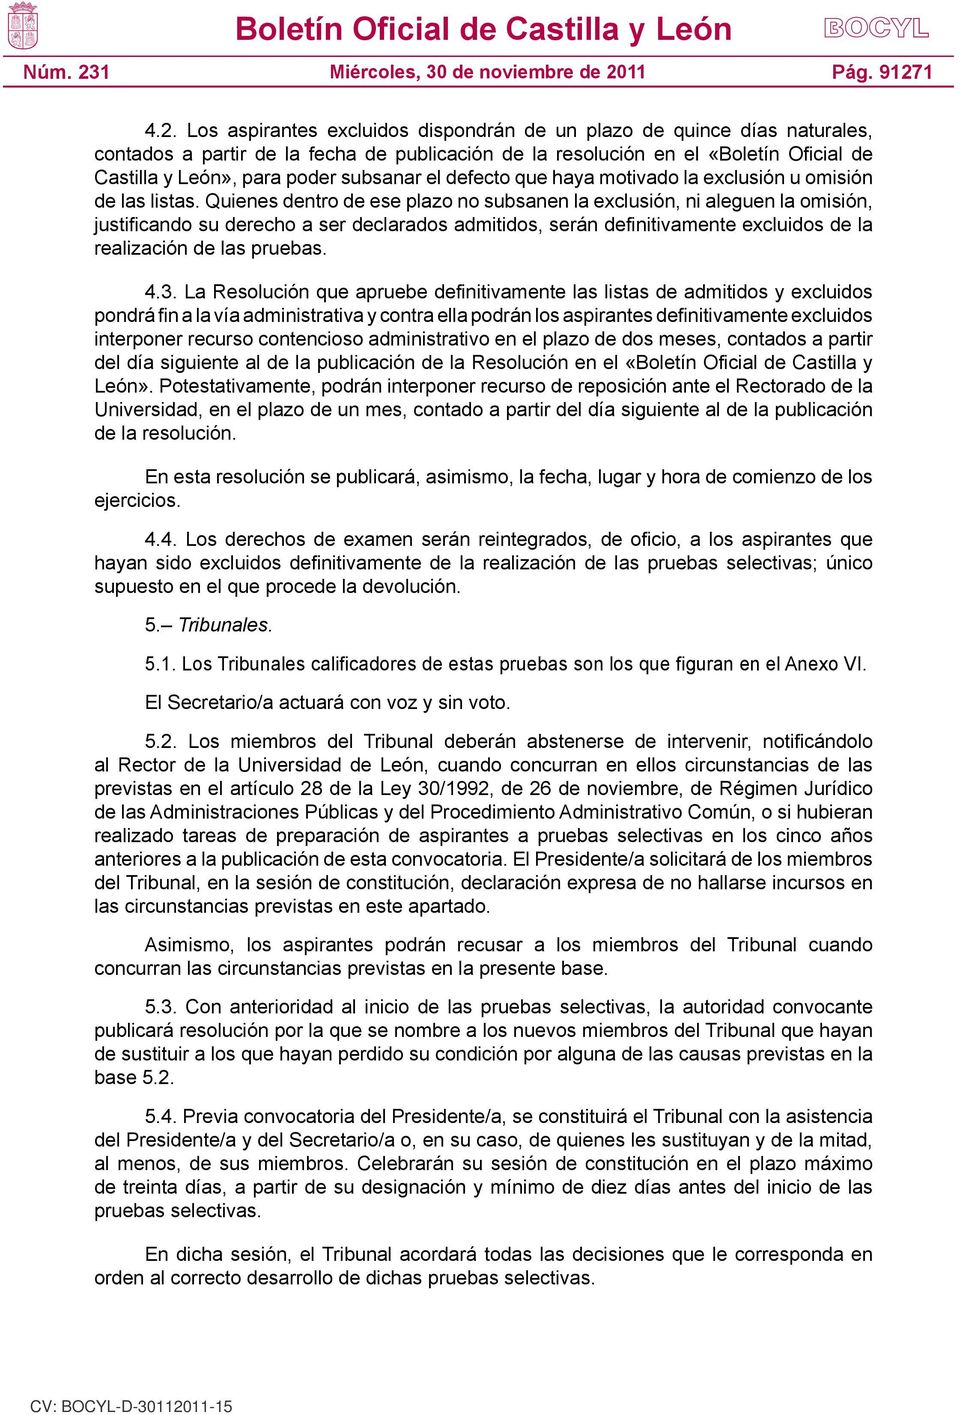 Los aspirantes excluidos dispondrán de un plazo de quince días naturales, contados a partir de la fecha de publicación de la resolución en el «Boletín Oficial de Castilla y León», para poder subsanar